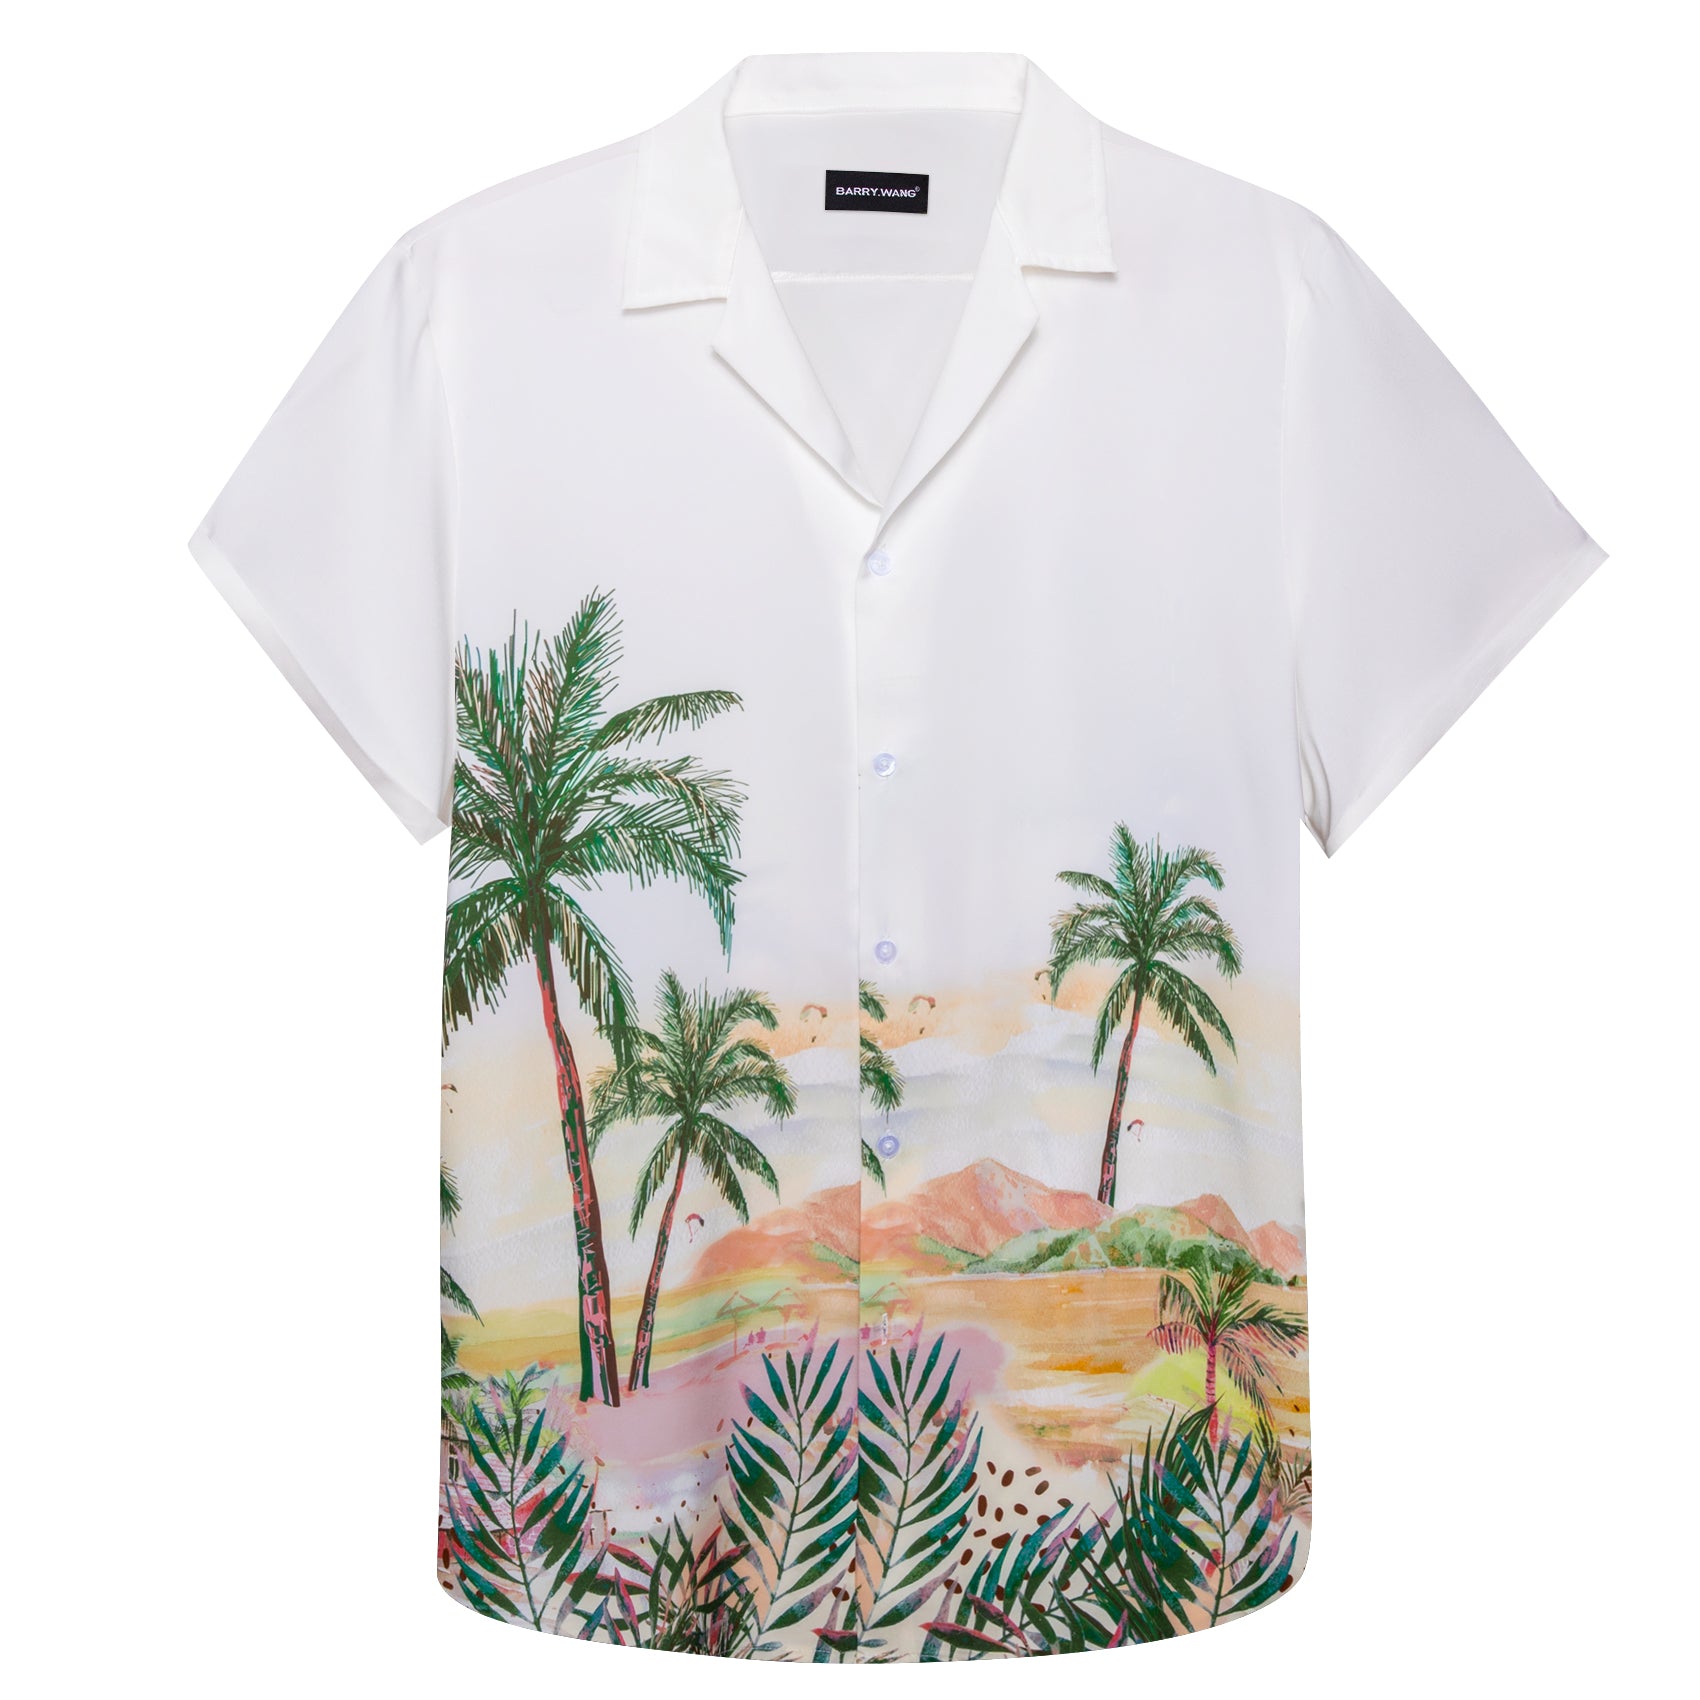 Barry Wang Hawaiian Shirts Sunset Coconut Trees Mens Printed White Shirts